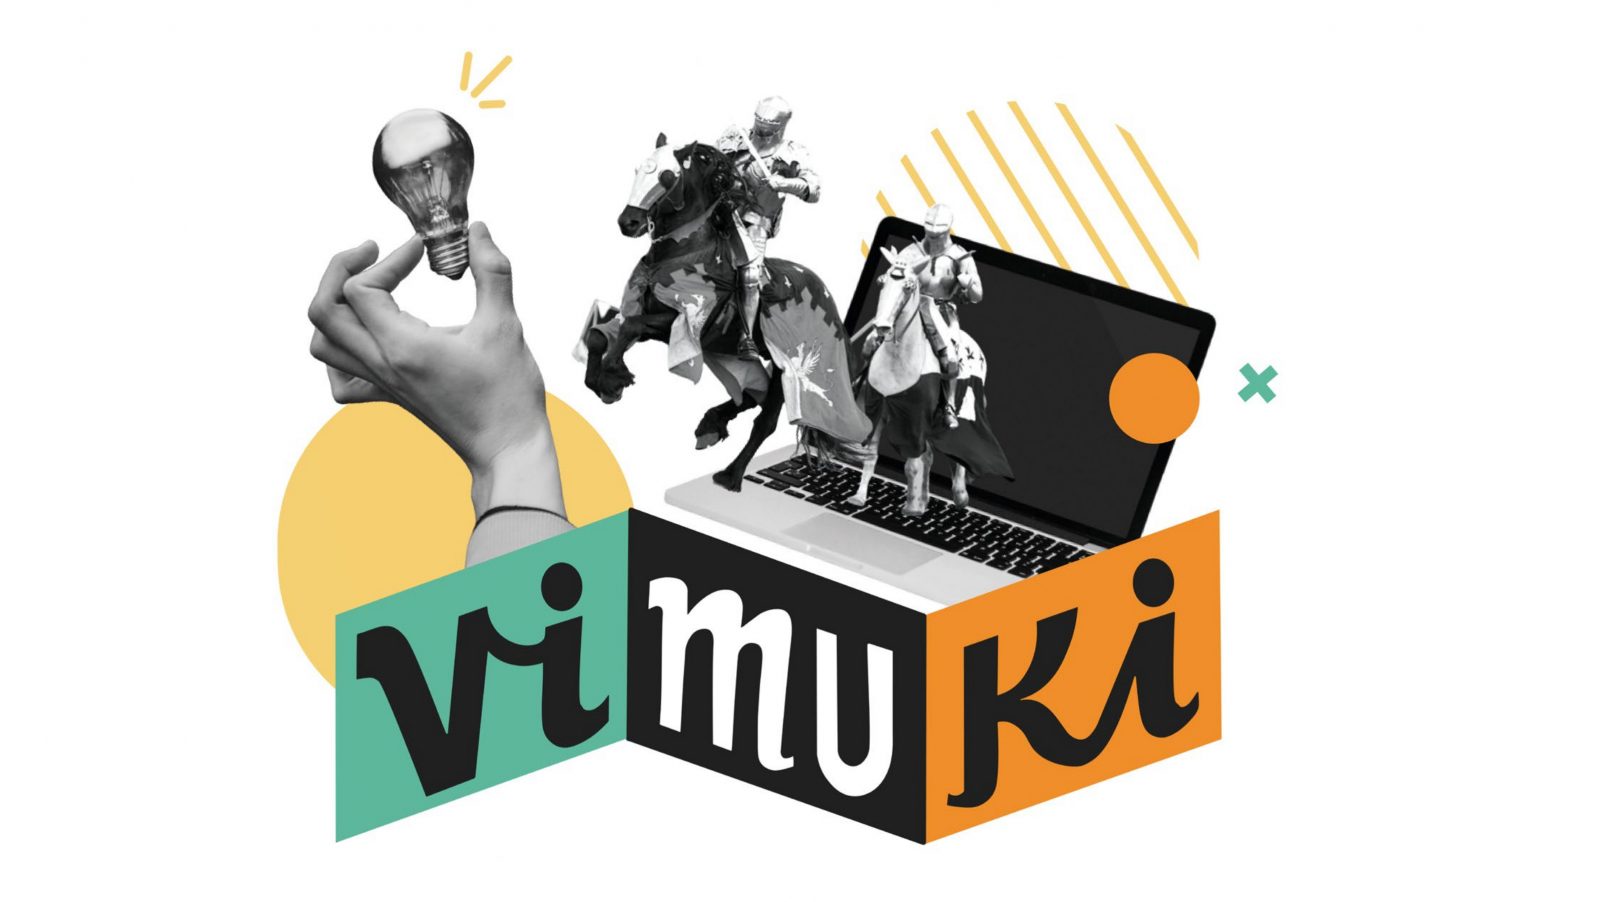 Das Vimuki-Logo mit bunten Formen und einem Bildschirm, aus dem Ritter auf ihren Pferden reiten. Eine Hand hält eine leuchtende Glühbirne.